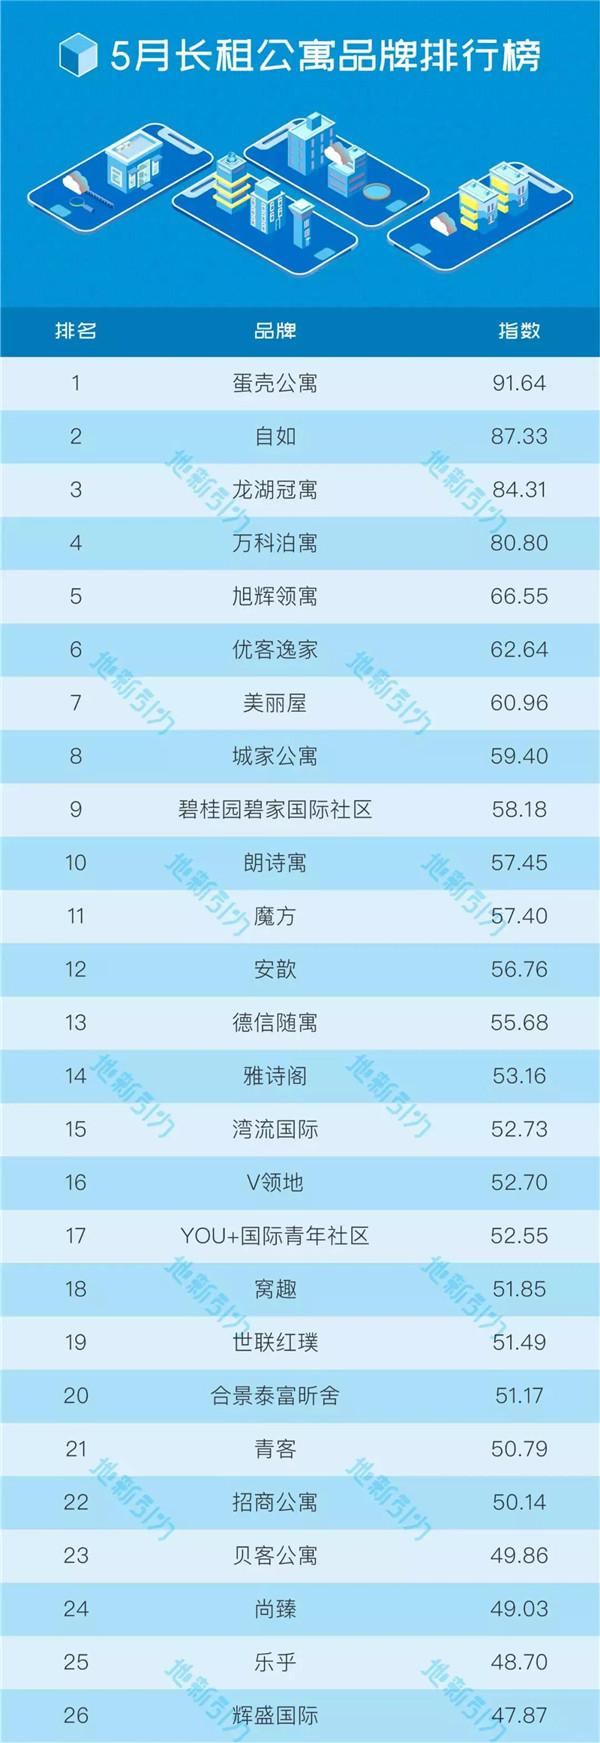 2019年5月中国长租公寓品牌排行榜